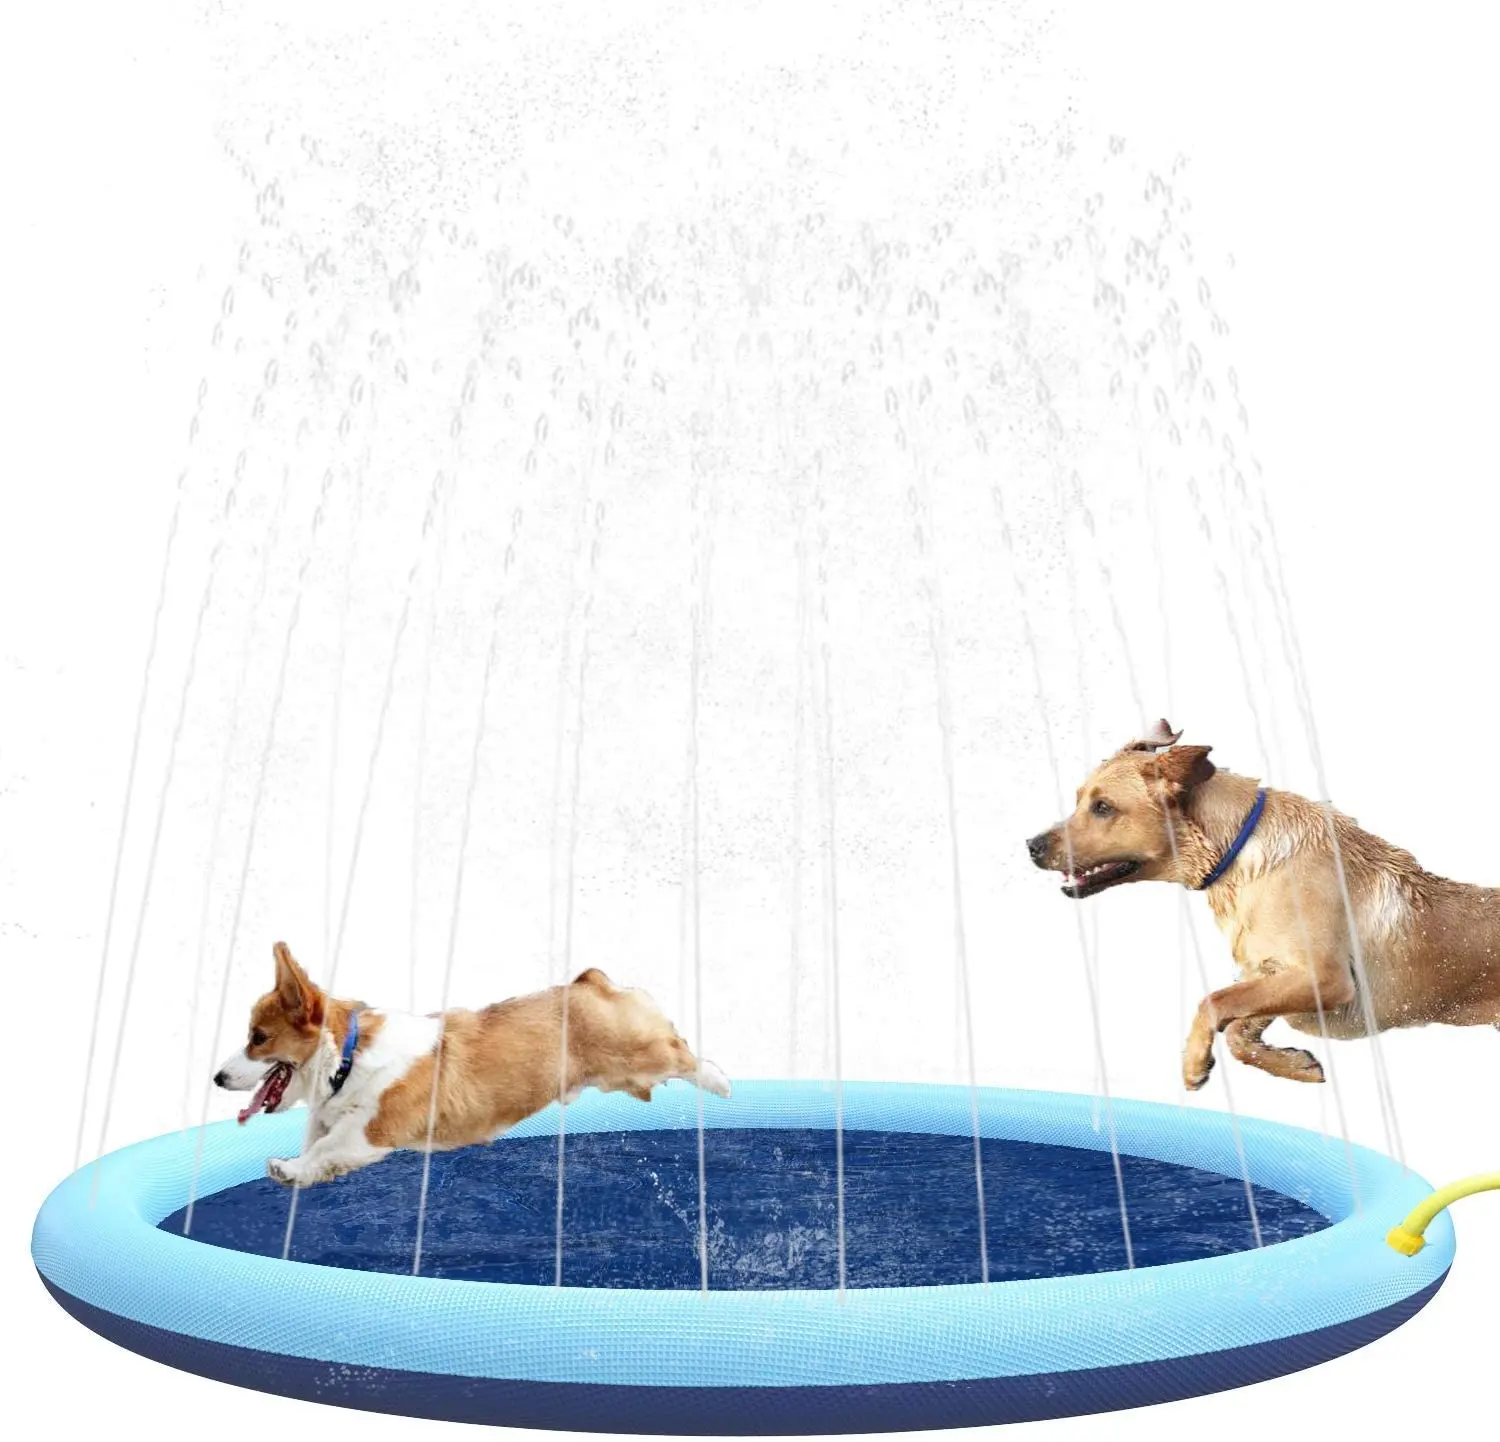 Распылитель для собак и детей, утолщенный бассейн для собак с распылителем, уличный игровой водяной коврик для домашних животных, игрушки для собак, кошек и детей